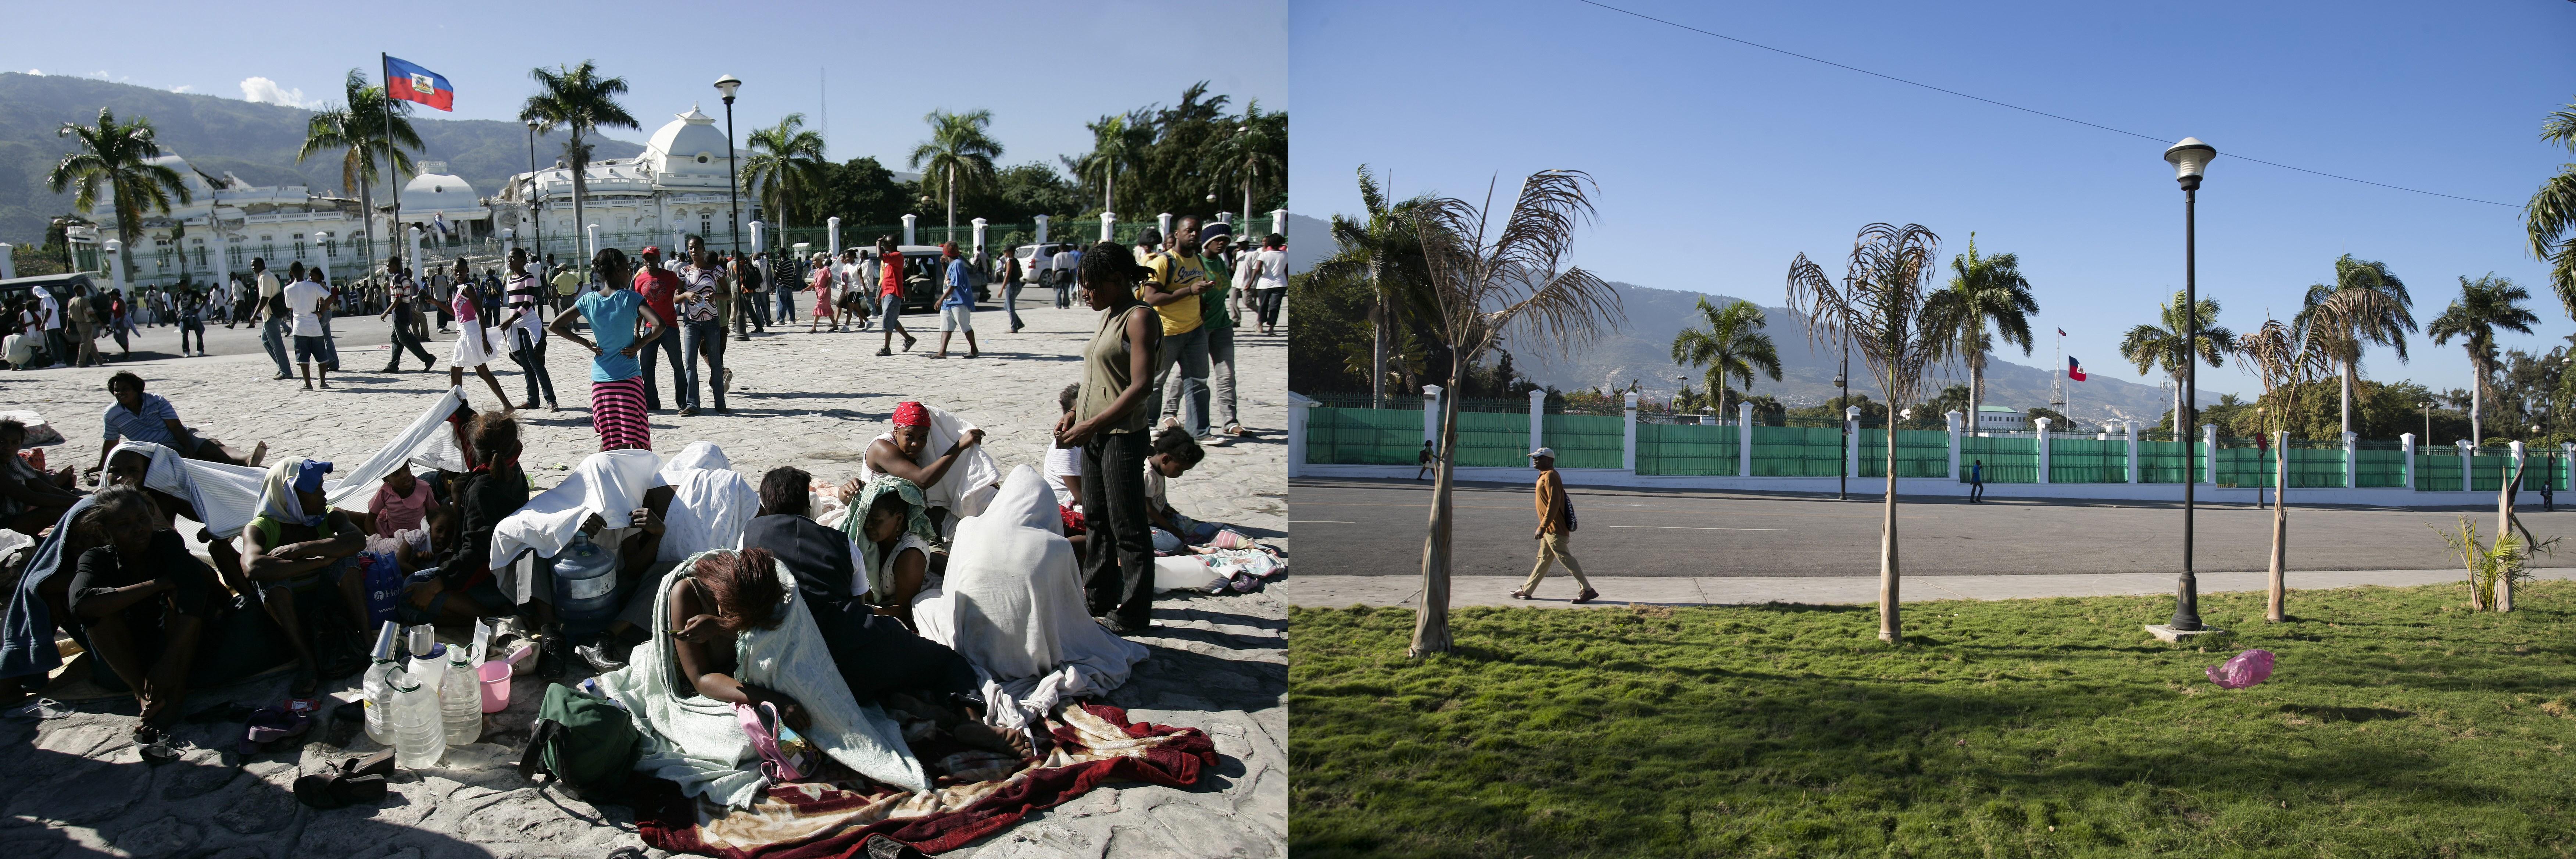 En la imagen, personas que buscan refugio el 13 de enero de 2010 en una plaza frente al Palacio Presidencial, diez años después, en el mismo lugar, las cosas no han cambiado mucho en Puerto Príncipe, Haití. (Foto Prensa Libre: EFE)